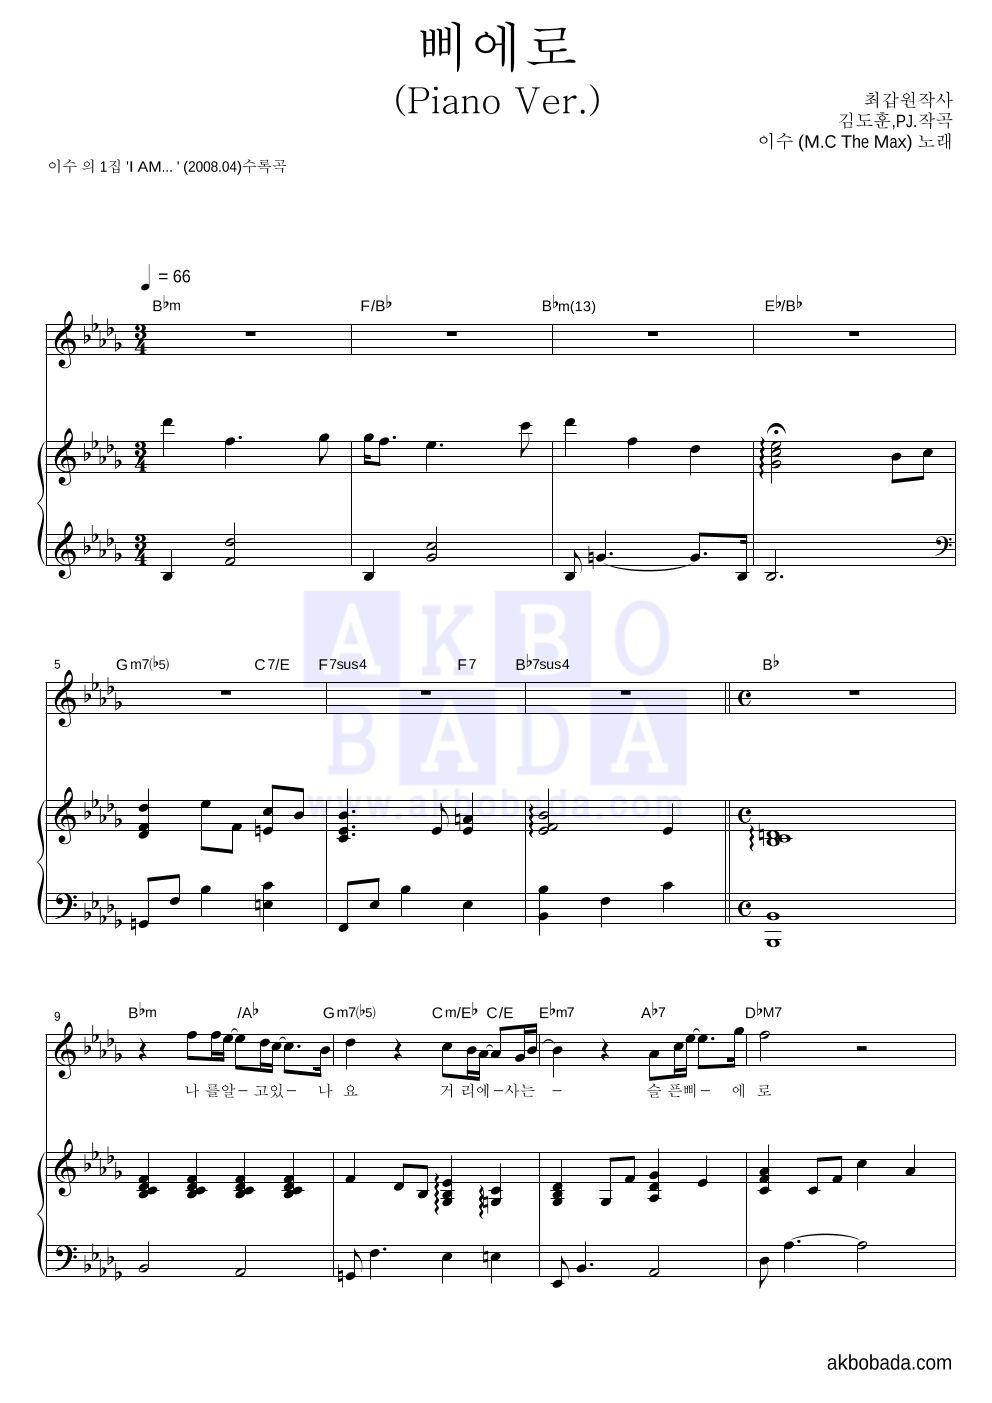 이수(엠씨 더 맥스) - 삐에로(Piano Ver.) 피아노 3단 악보 